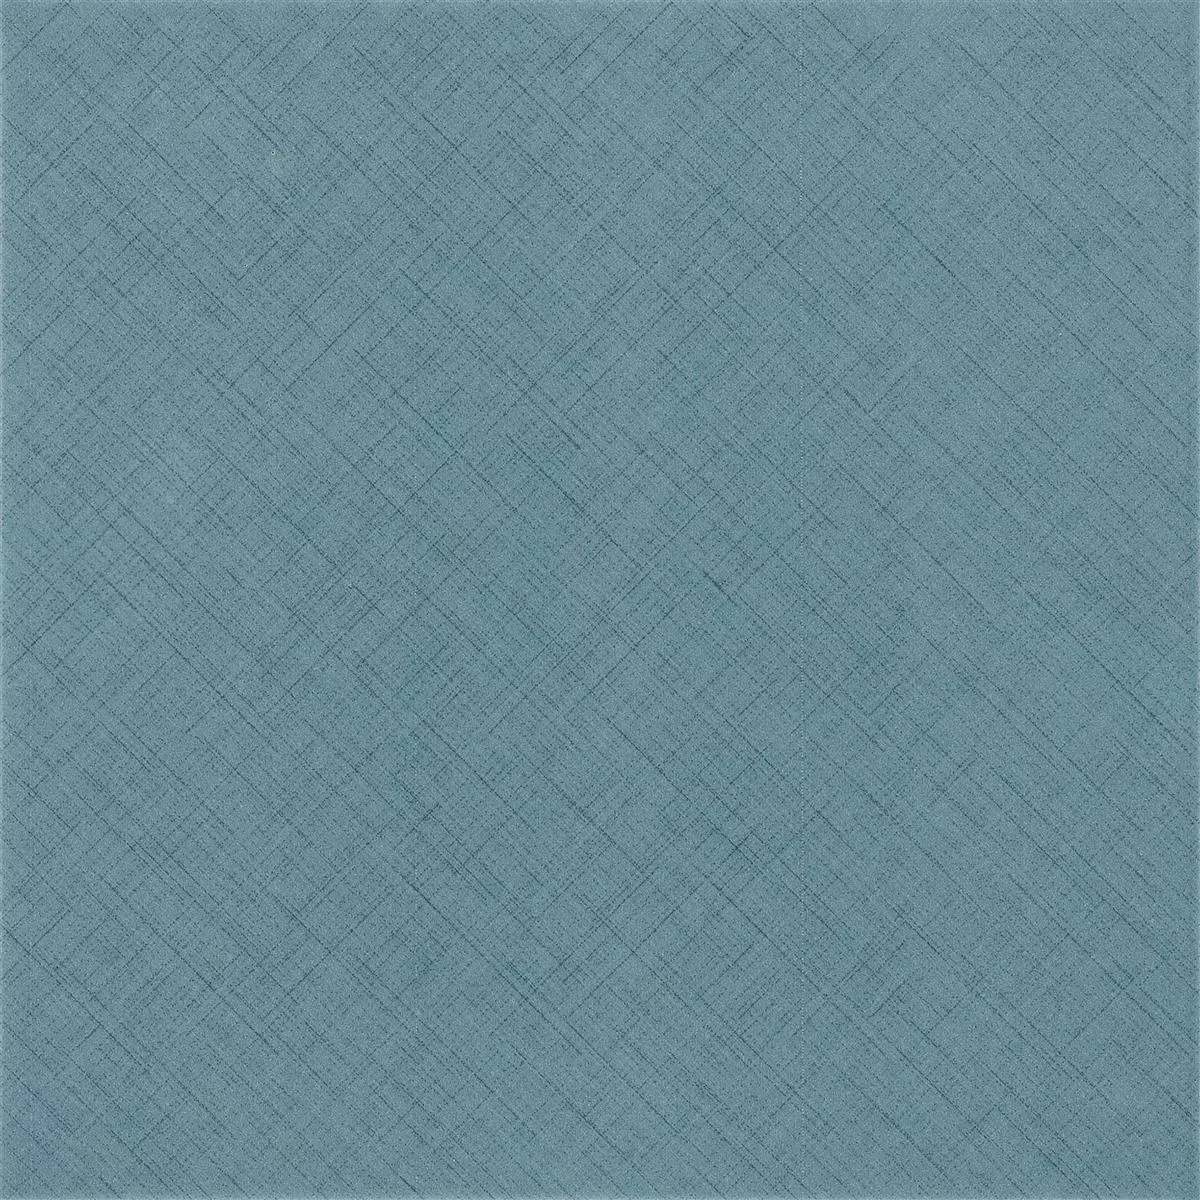 Πλακάκια Δαπέδου Flowerfield 18,5x18,5cm Μπλε Πλακάκι Bάσης